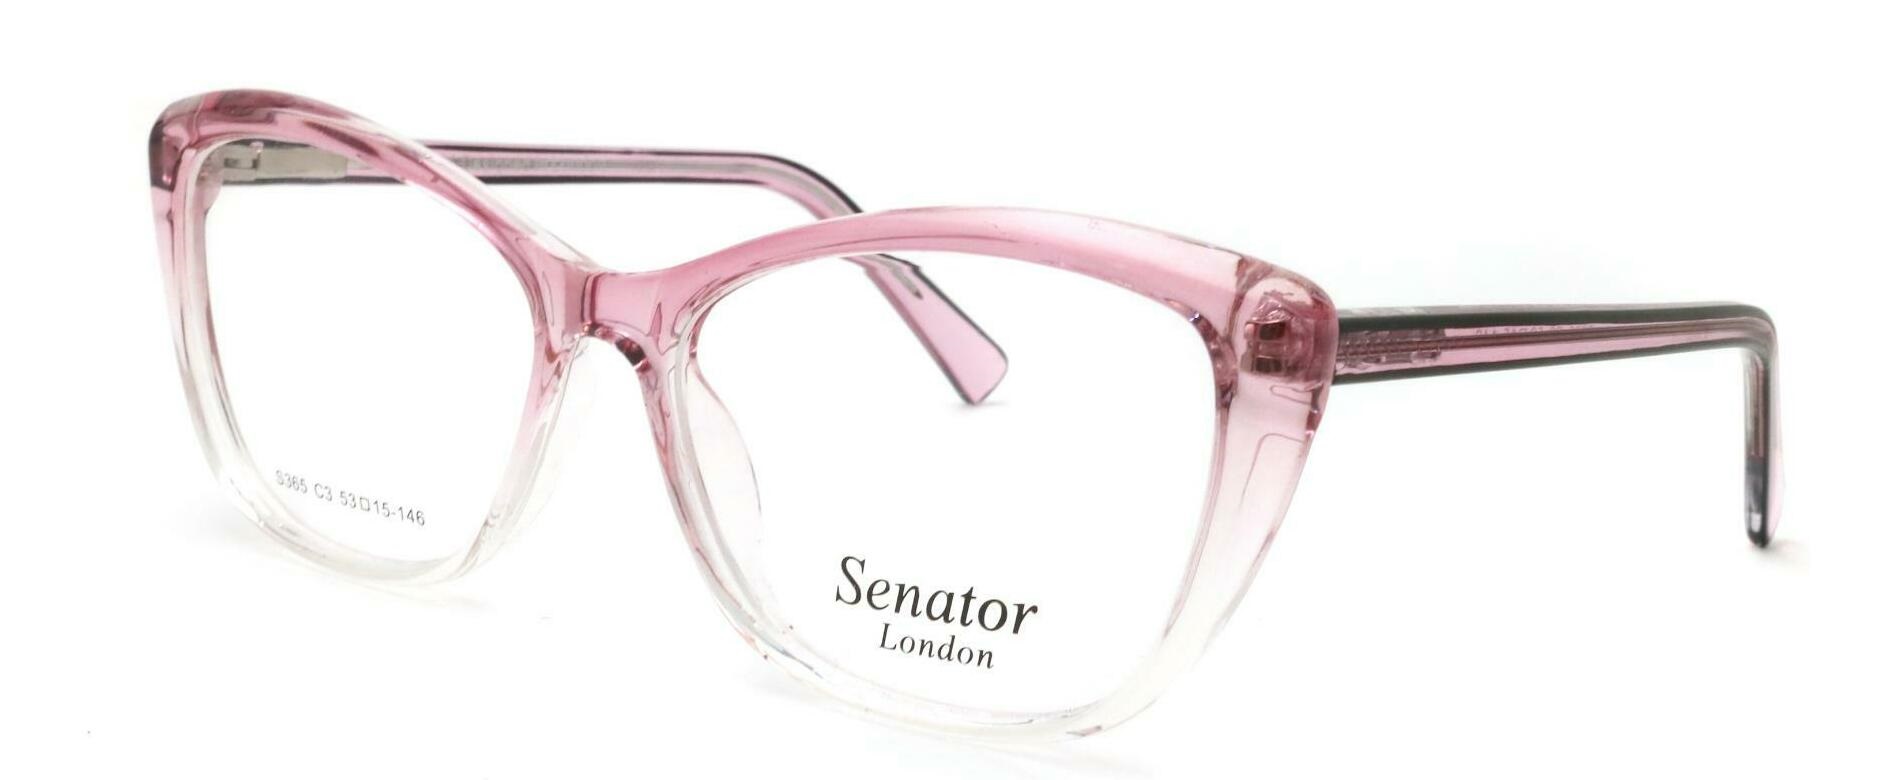 senator_365_pink